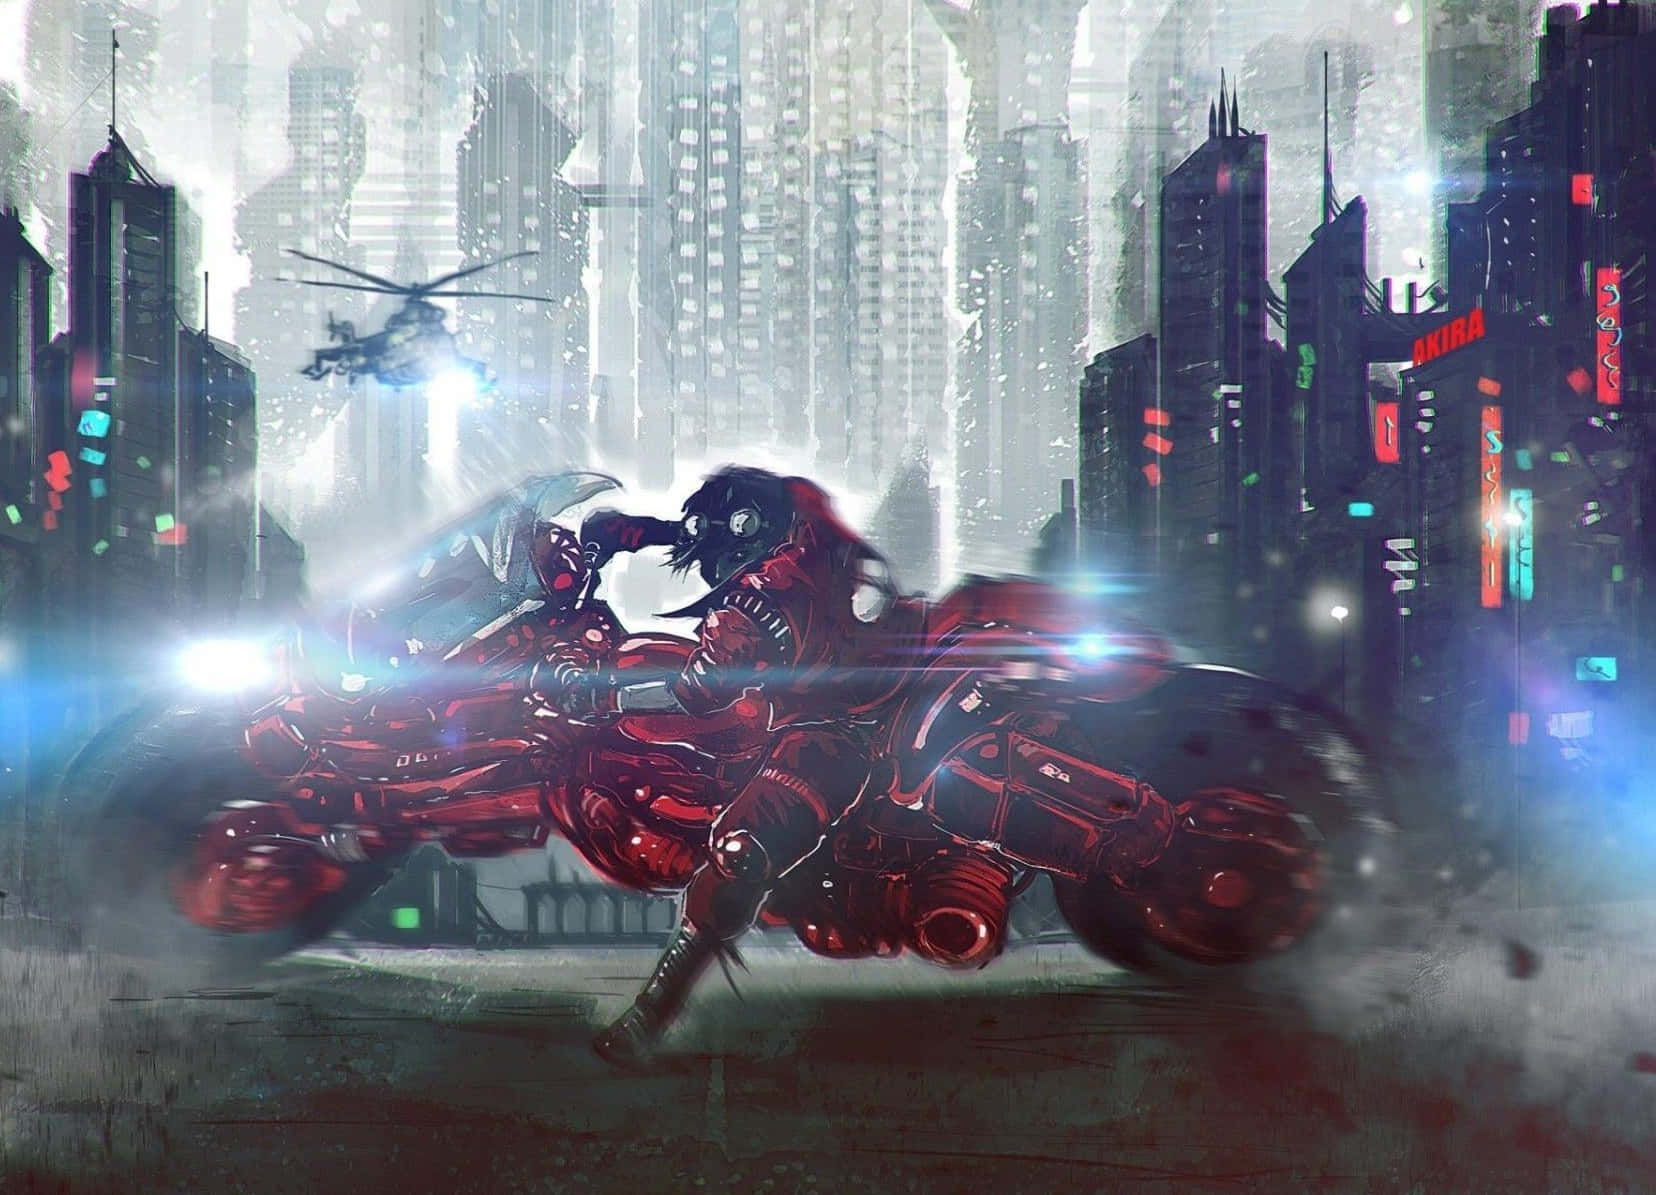 Shotaro Kaneda Riding On His Iconic Red Motorcycle. Wallpaper